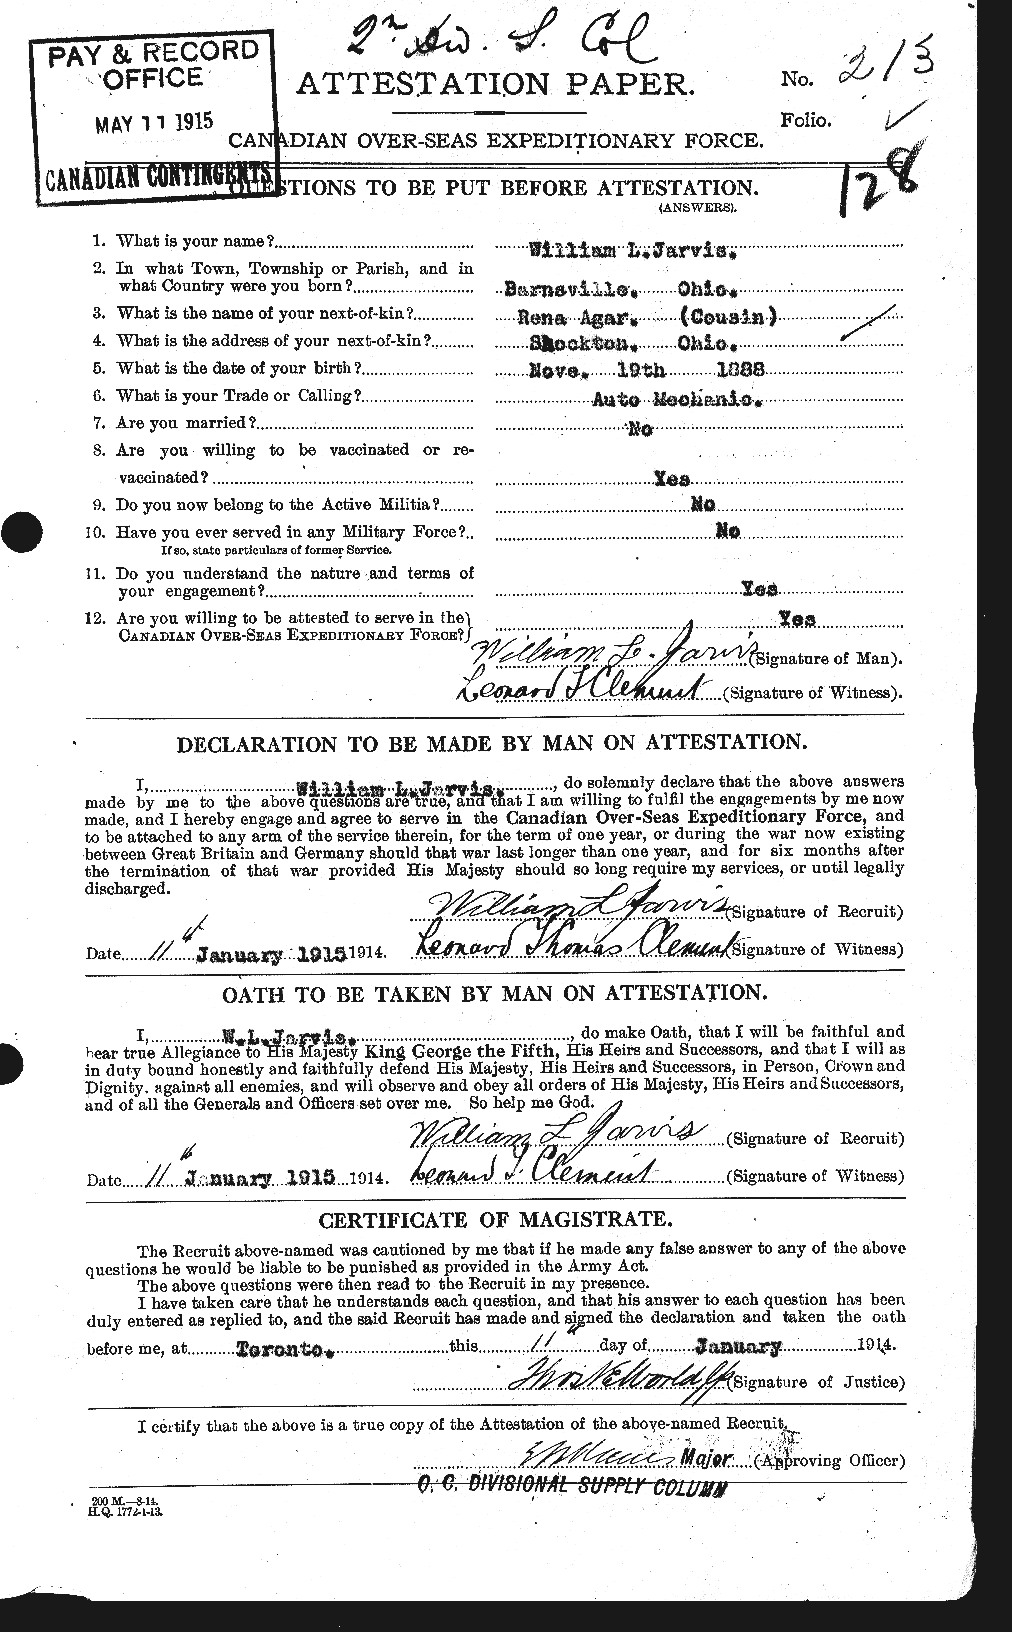 Dossiers du Personnel de la Première Guerre mondiale - CEC 415891a